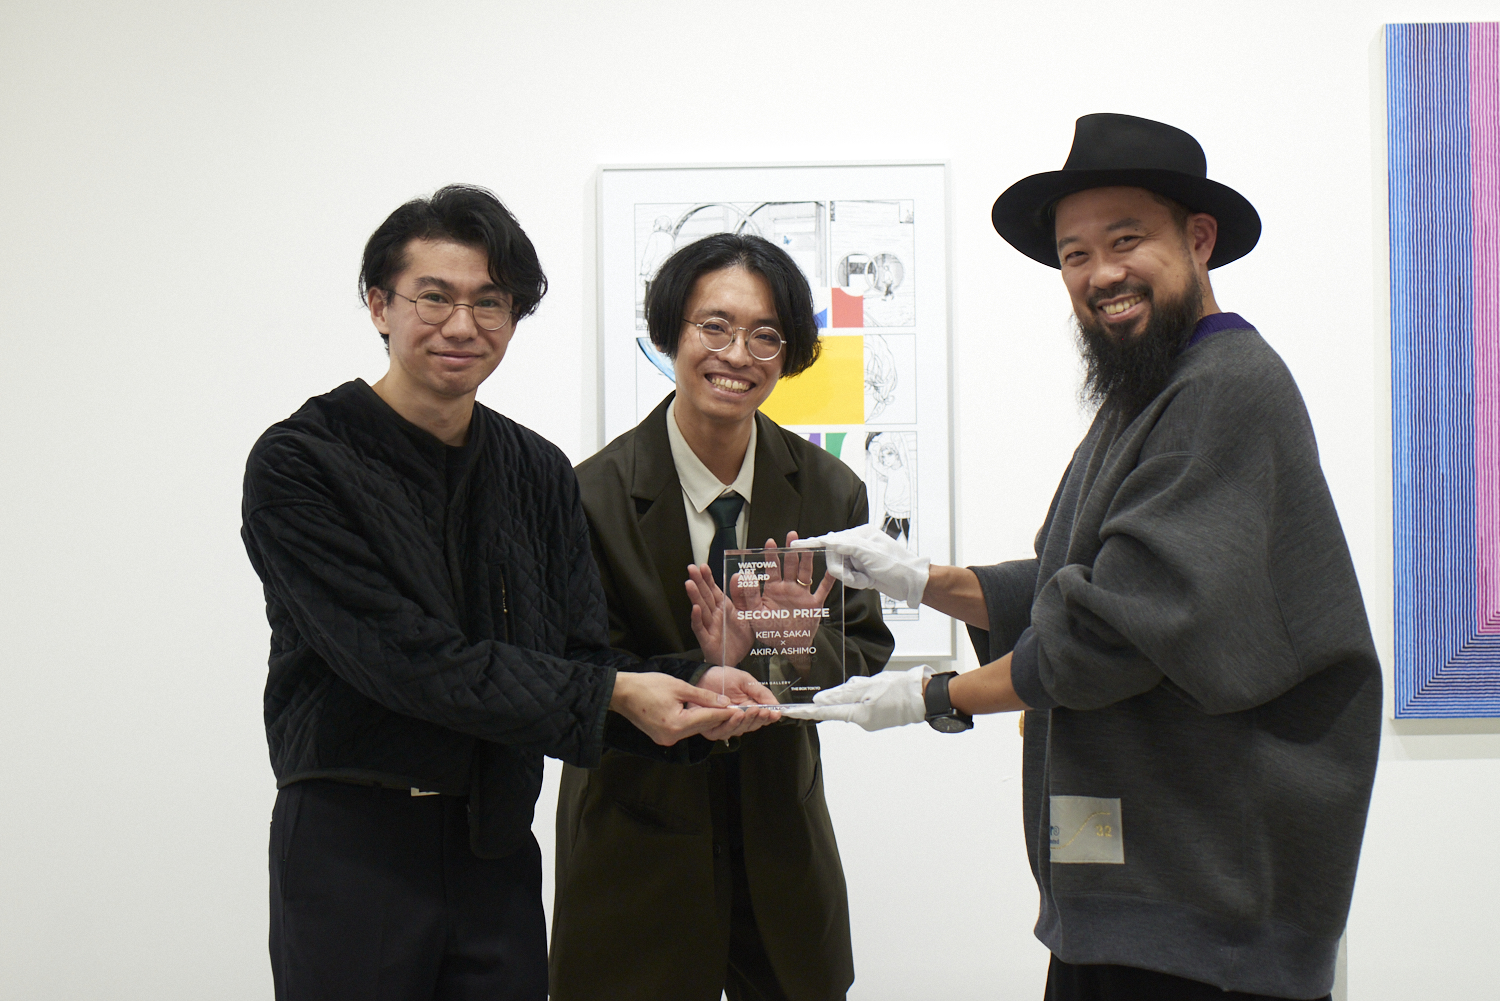 http://www.watowa.jp/news/1216_award_447.jpg